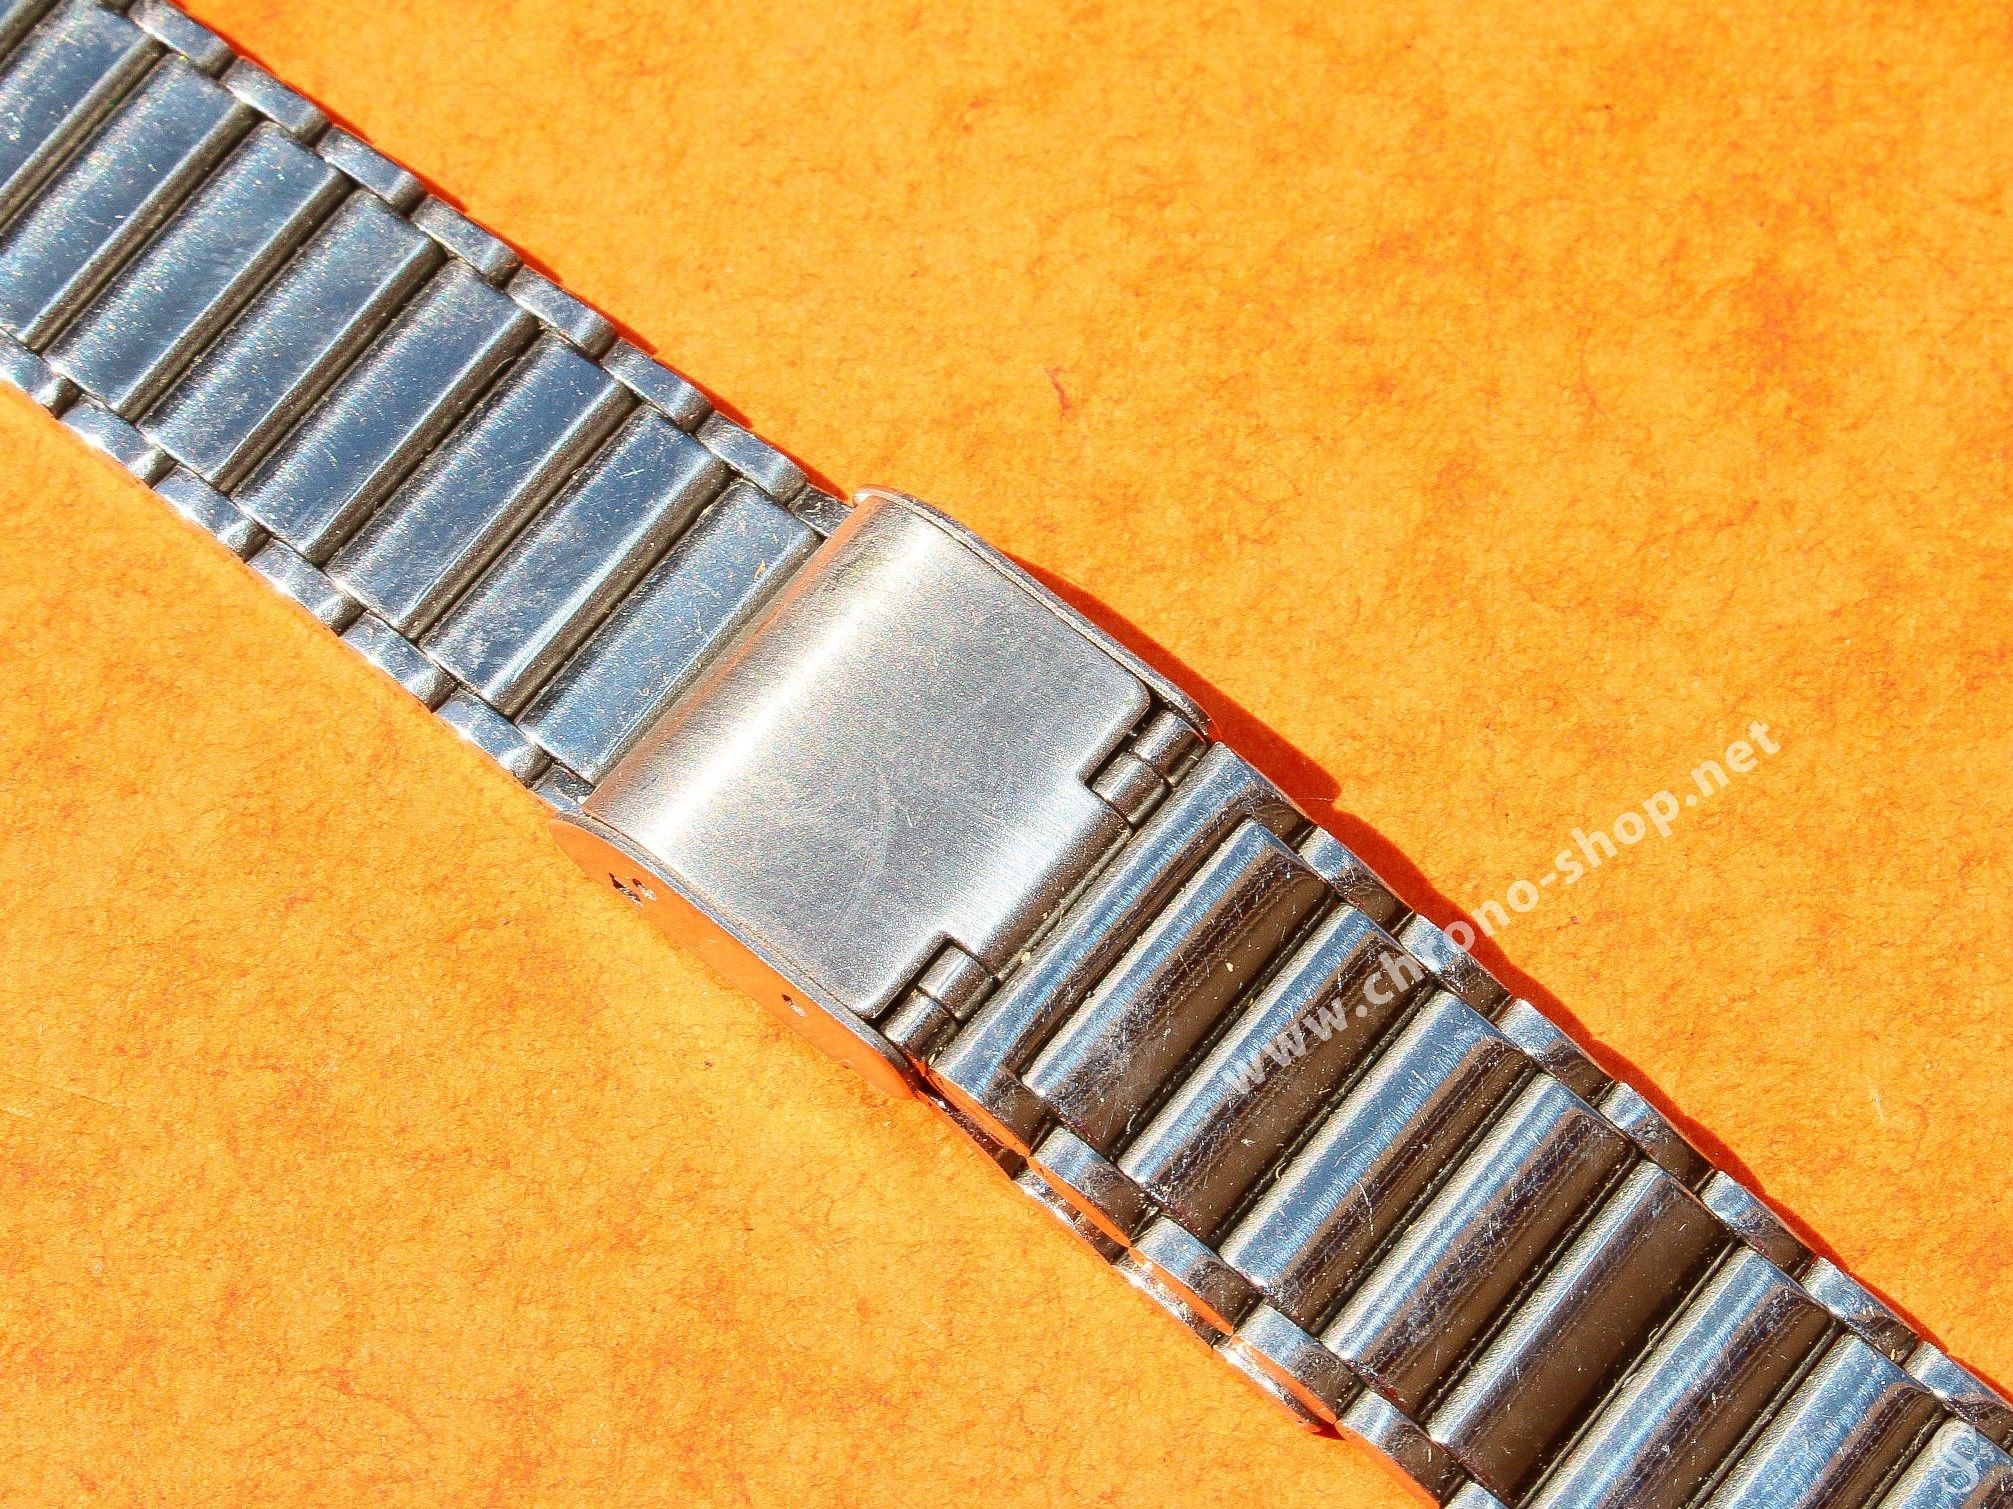 Timex Women's Quartz Expansion Stainless Steel Bracelet Watch - ShopHQ.com